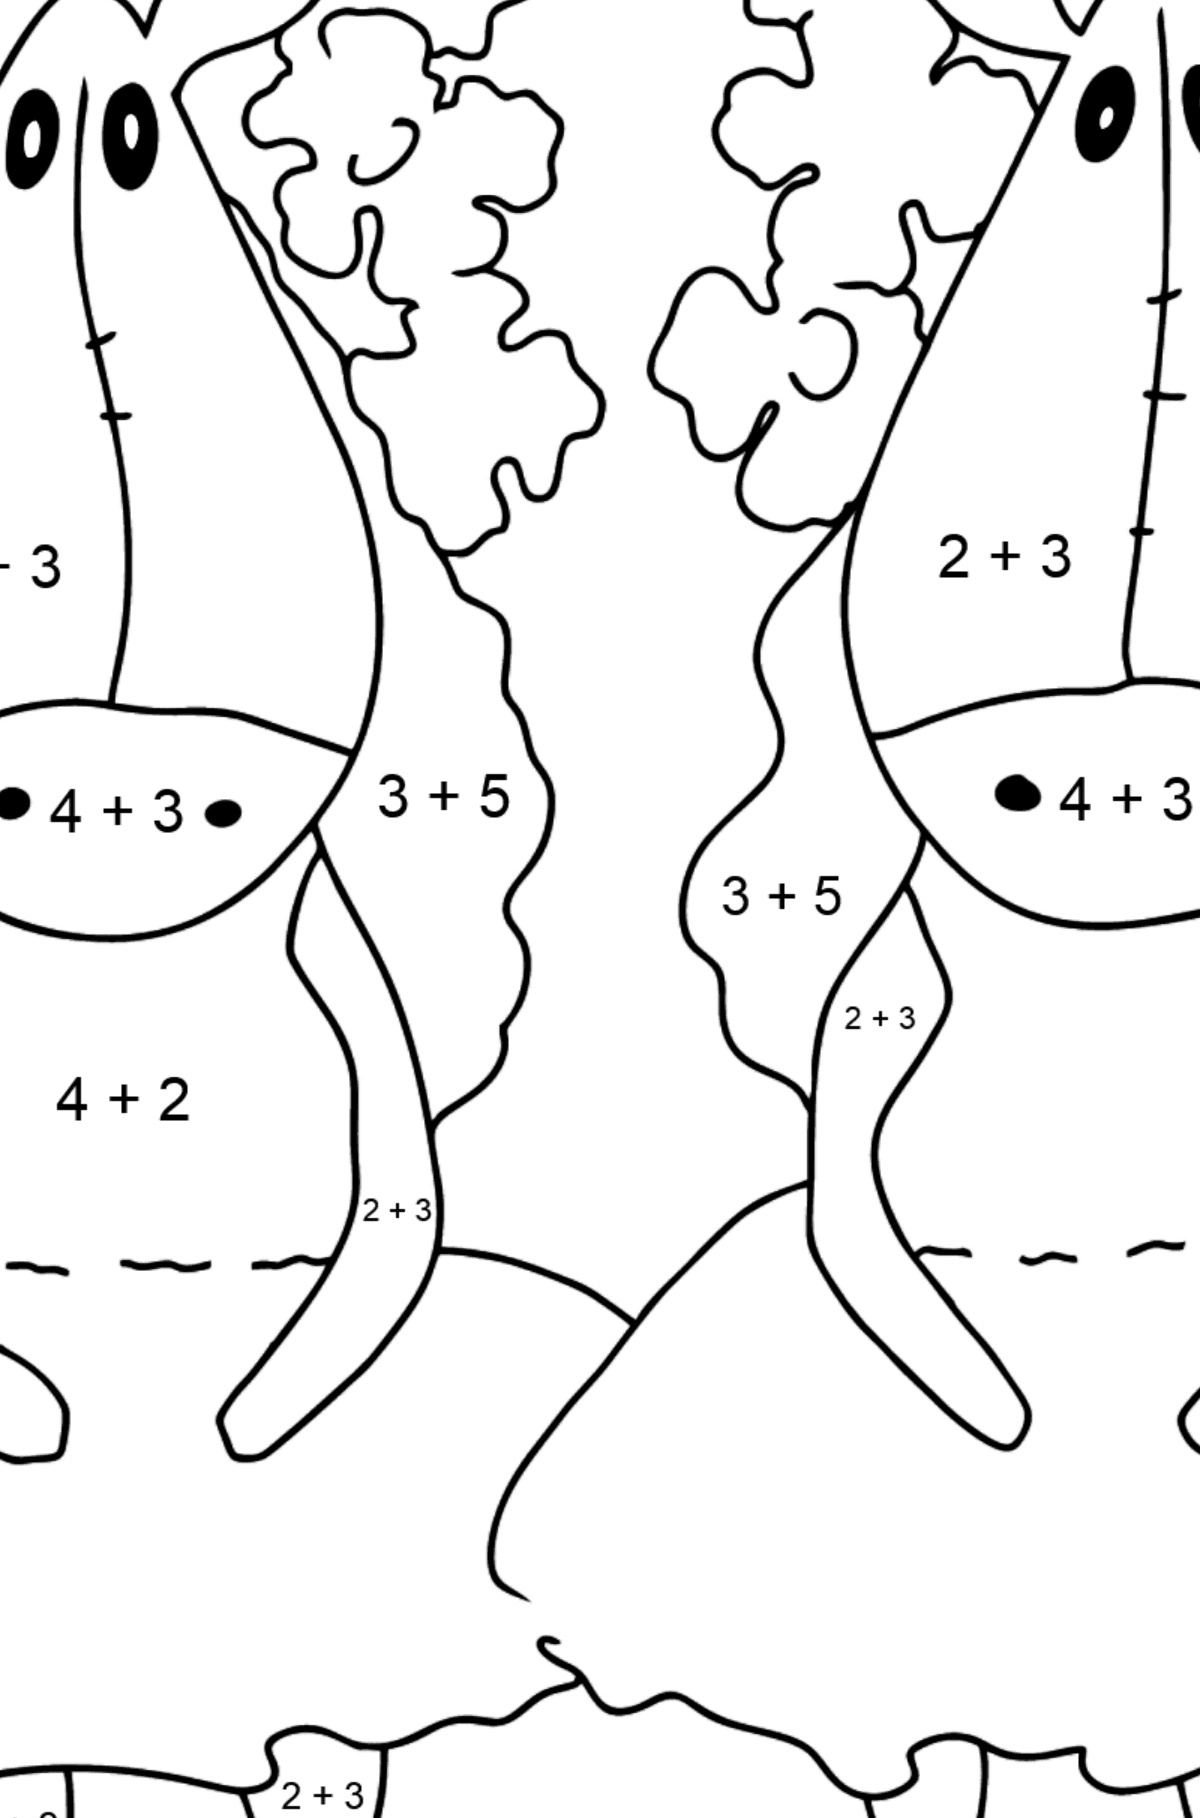 Desenho de cavalos mágicos para colorir fácil - Colorindo com Matemática - Soma para Crianças